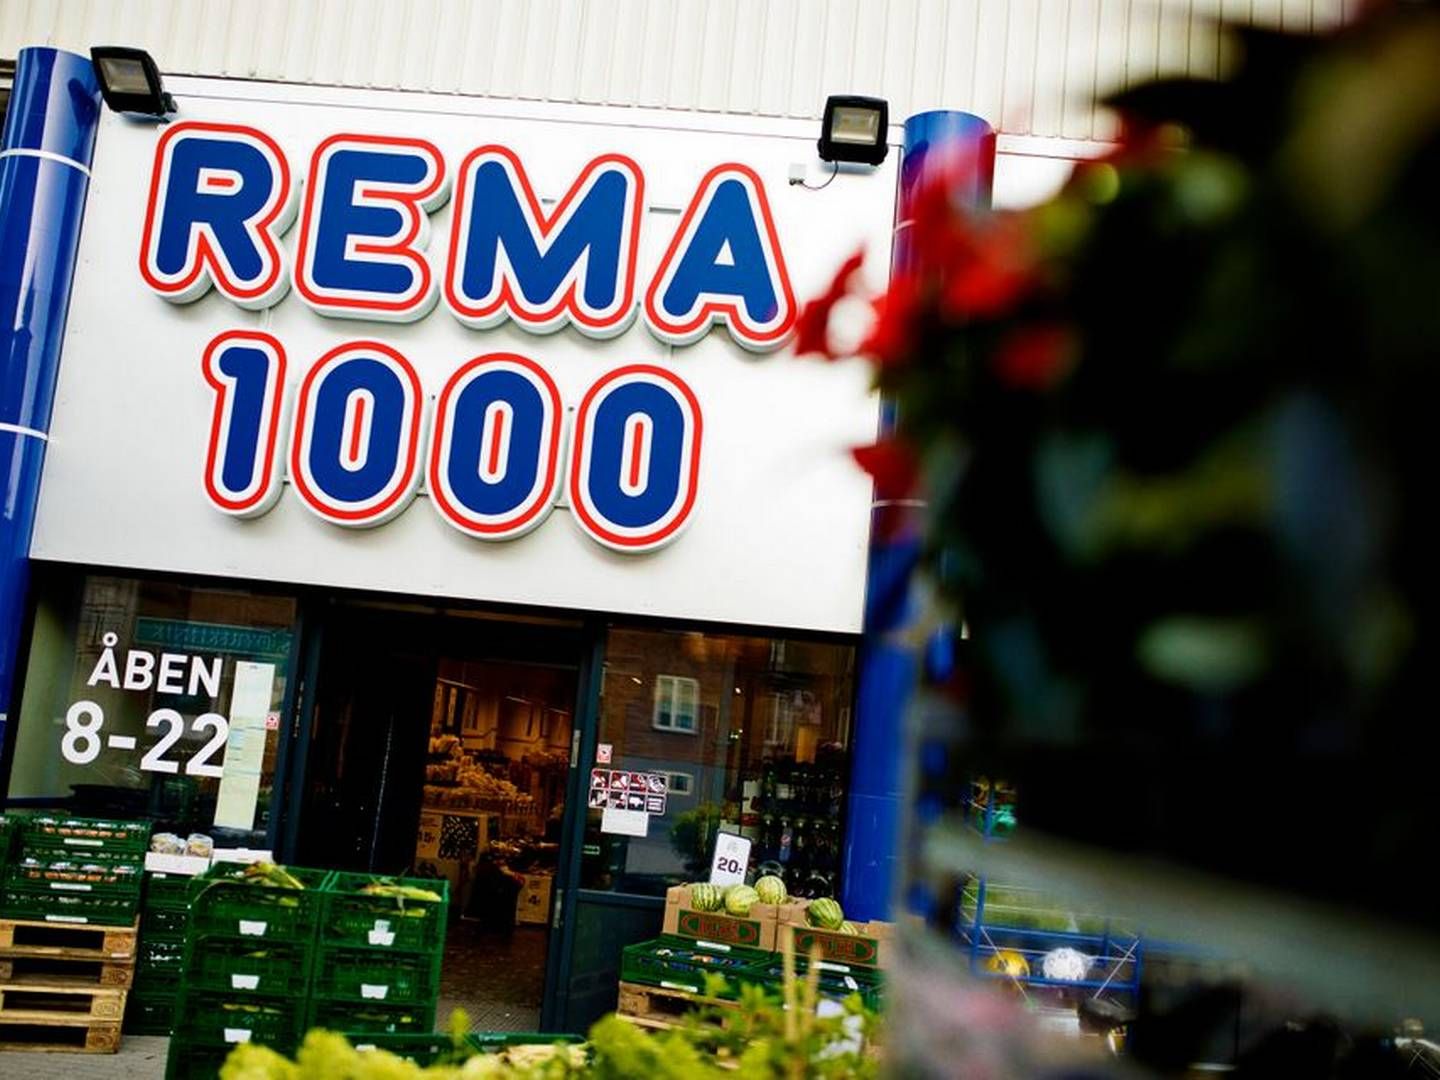 Rema 1000 har planer om at åbne i 60-80 af Aldis tidligere butikker. | Foto: Rema 1000/pr